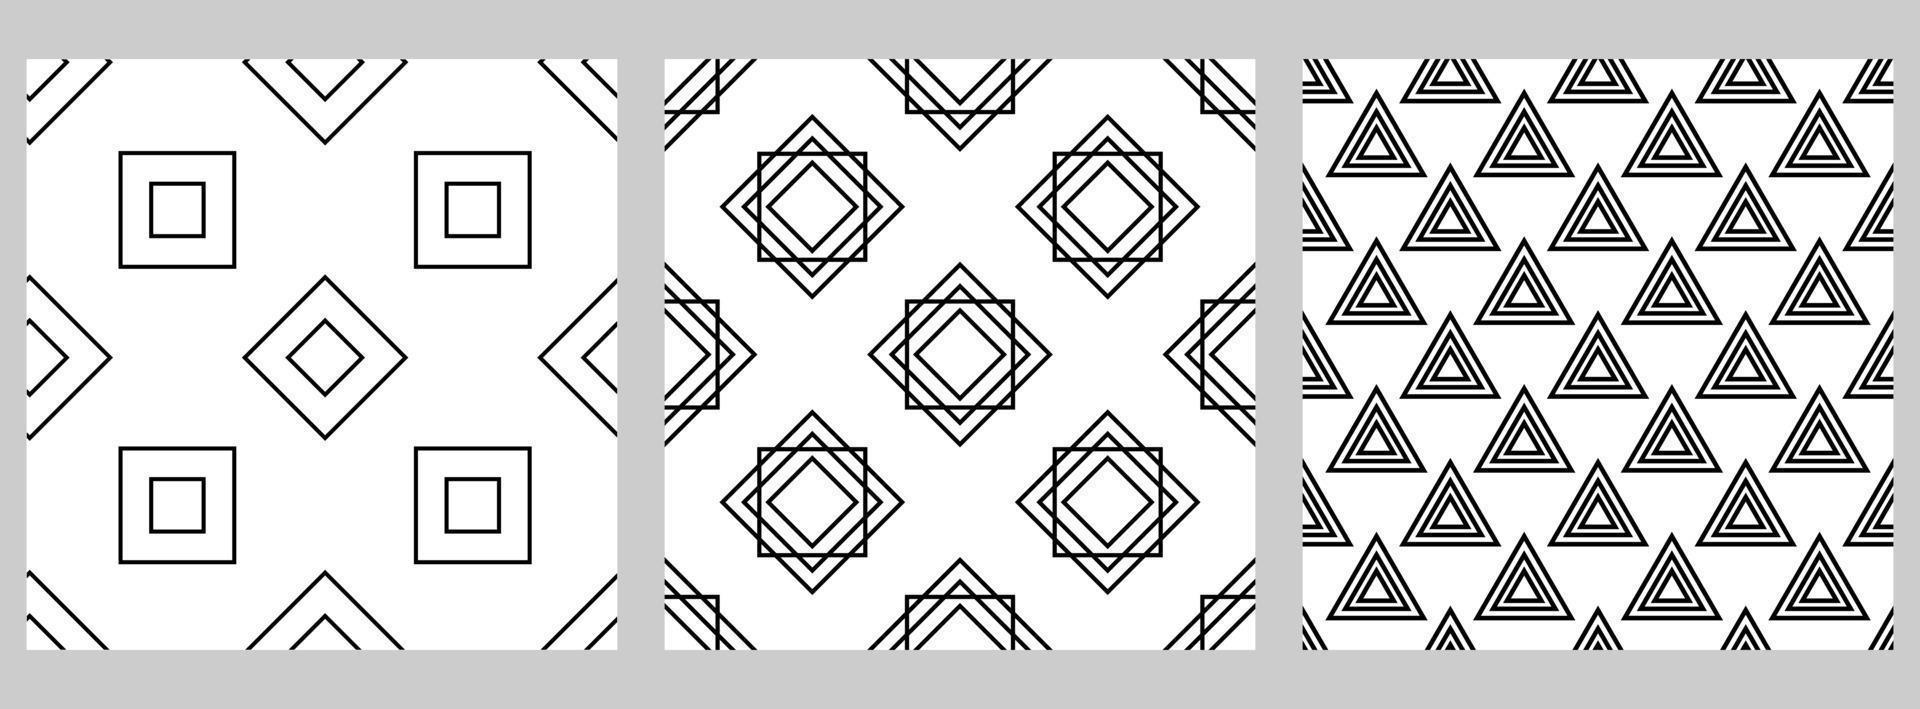 uppsättning av geometriska sömlösa mönster med förskjutna figurer. svarta former på vit bakgrund. kvadrat, romb, triangel. vektor